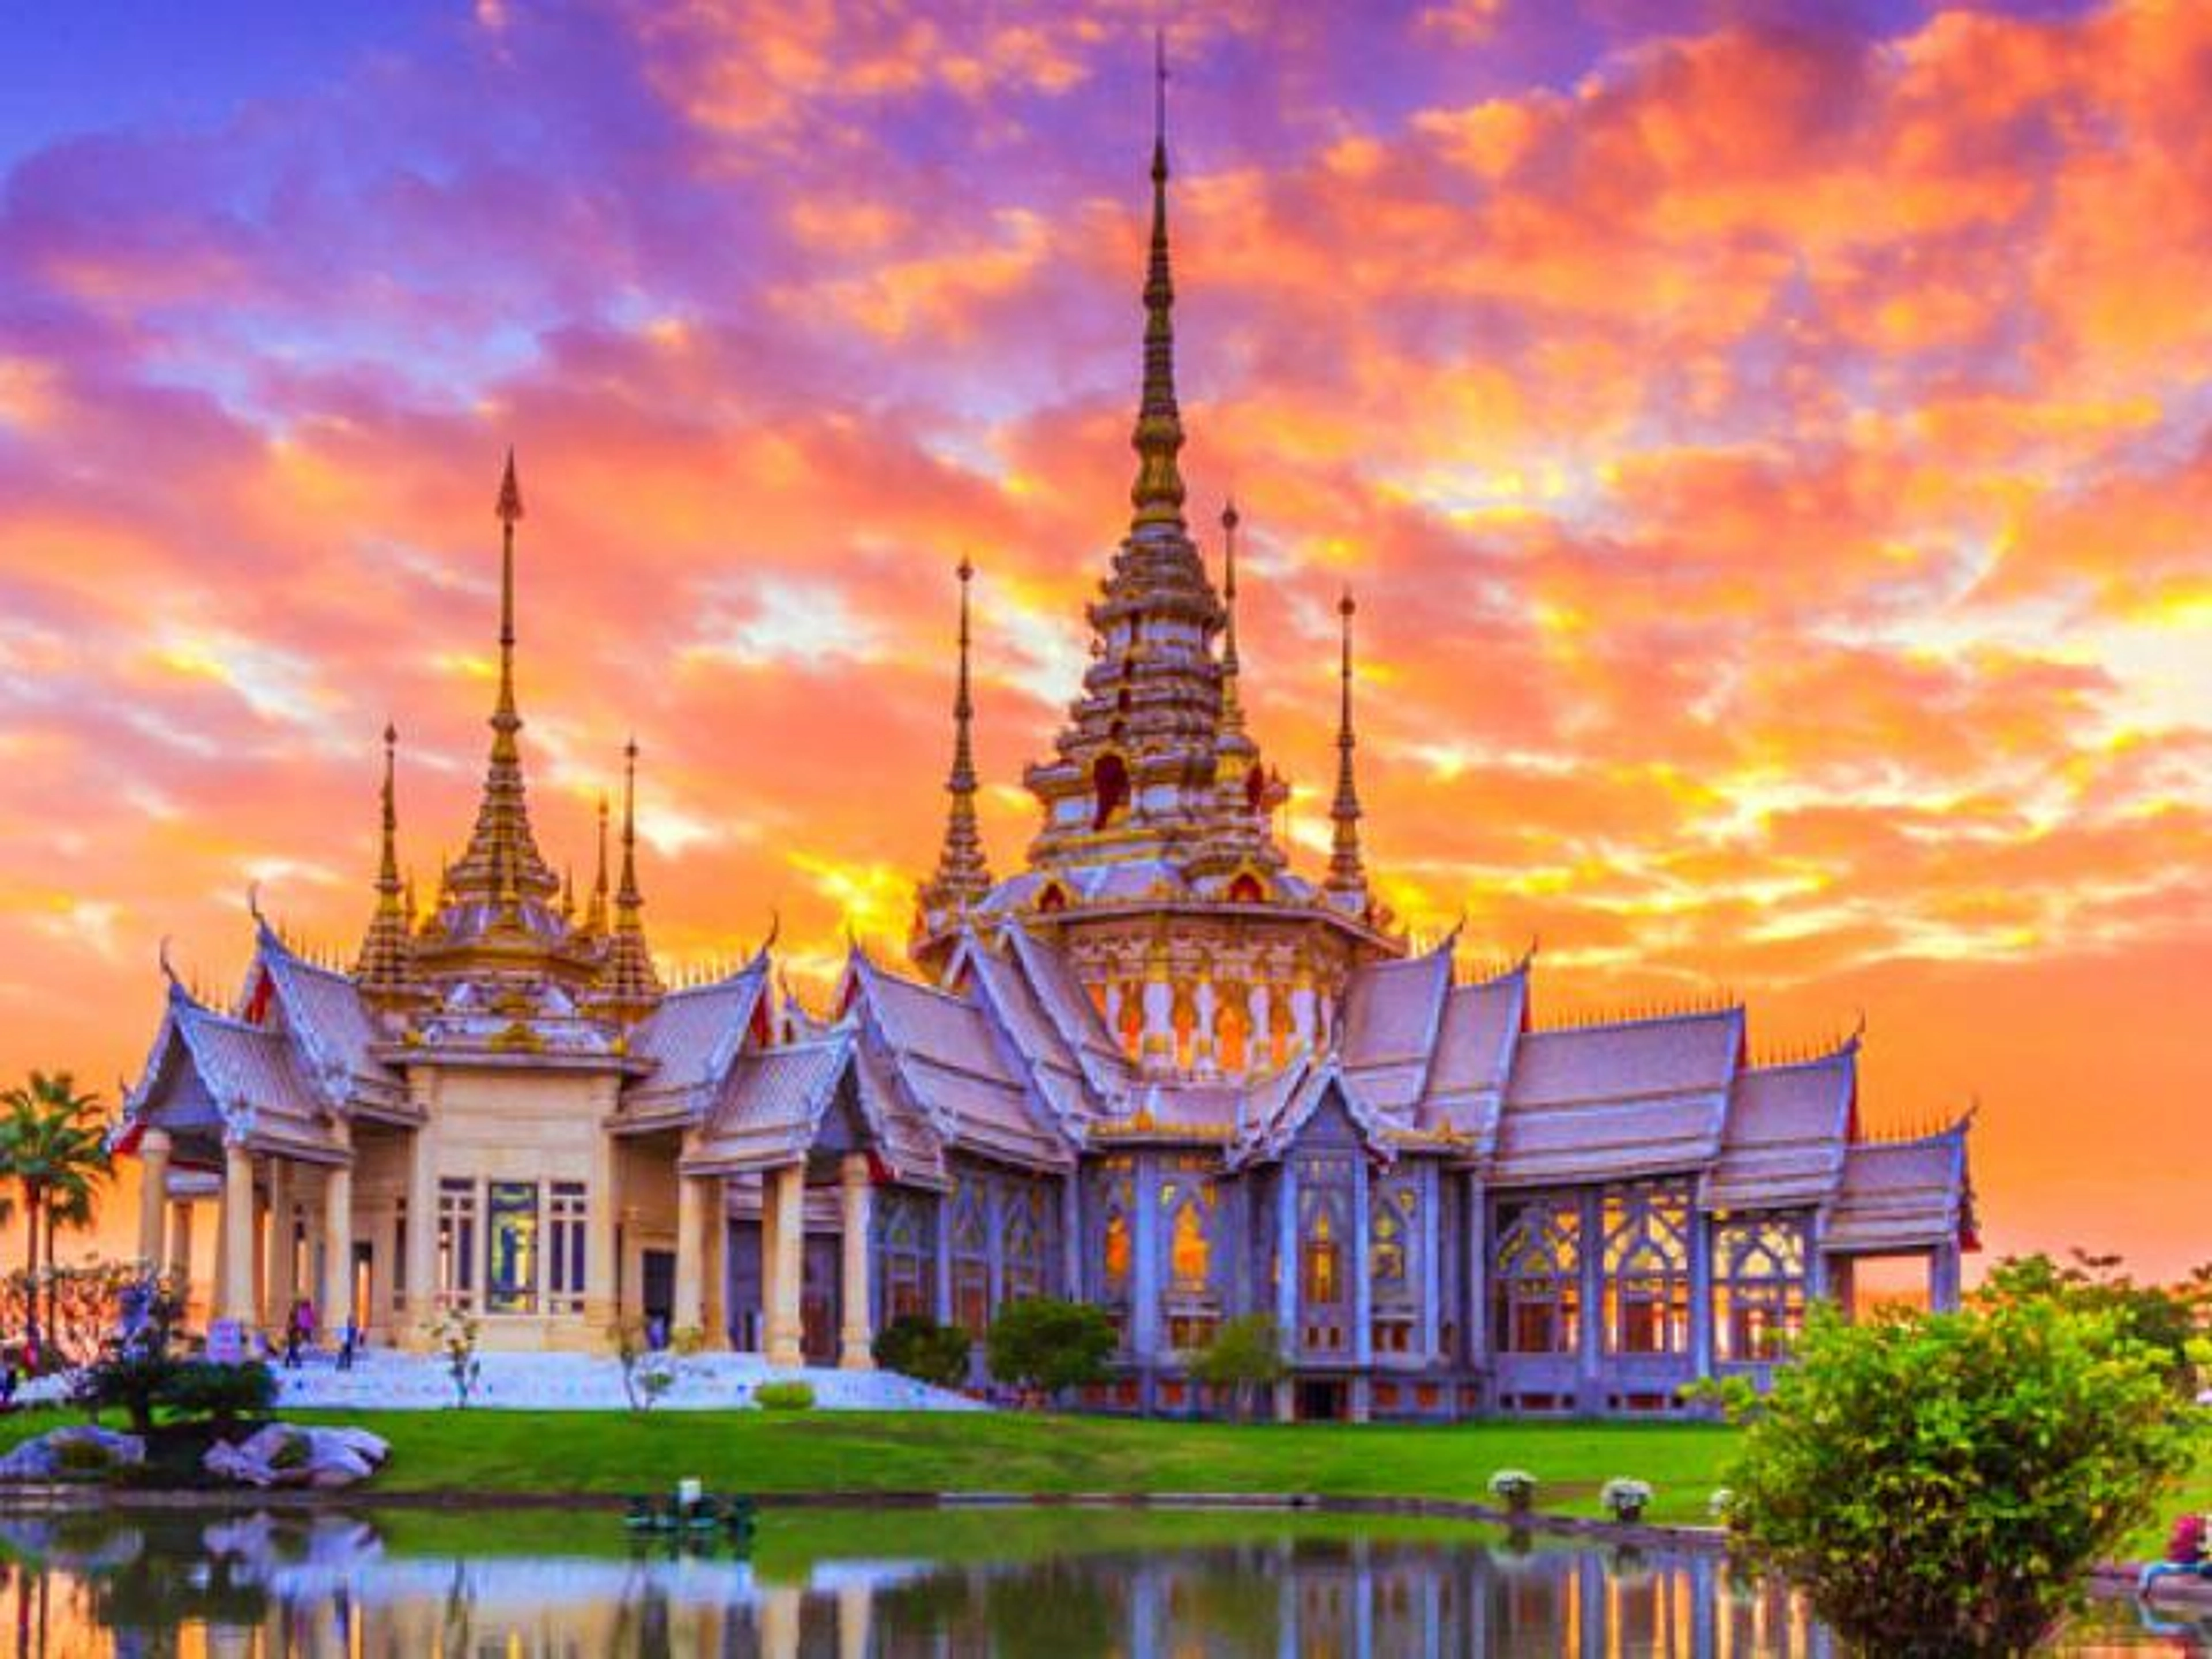 Đến thăm và trải nghiệm ngôi chùa lớn khang trang,lộng lẫy tại Thái Lan